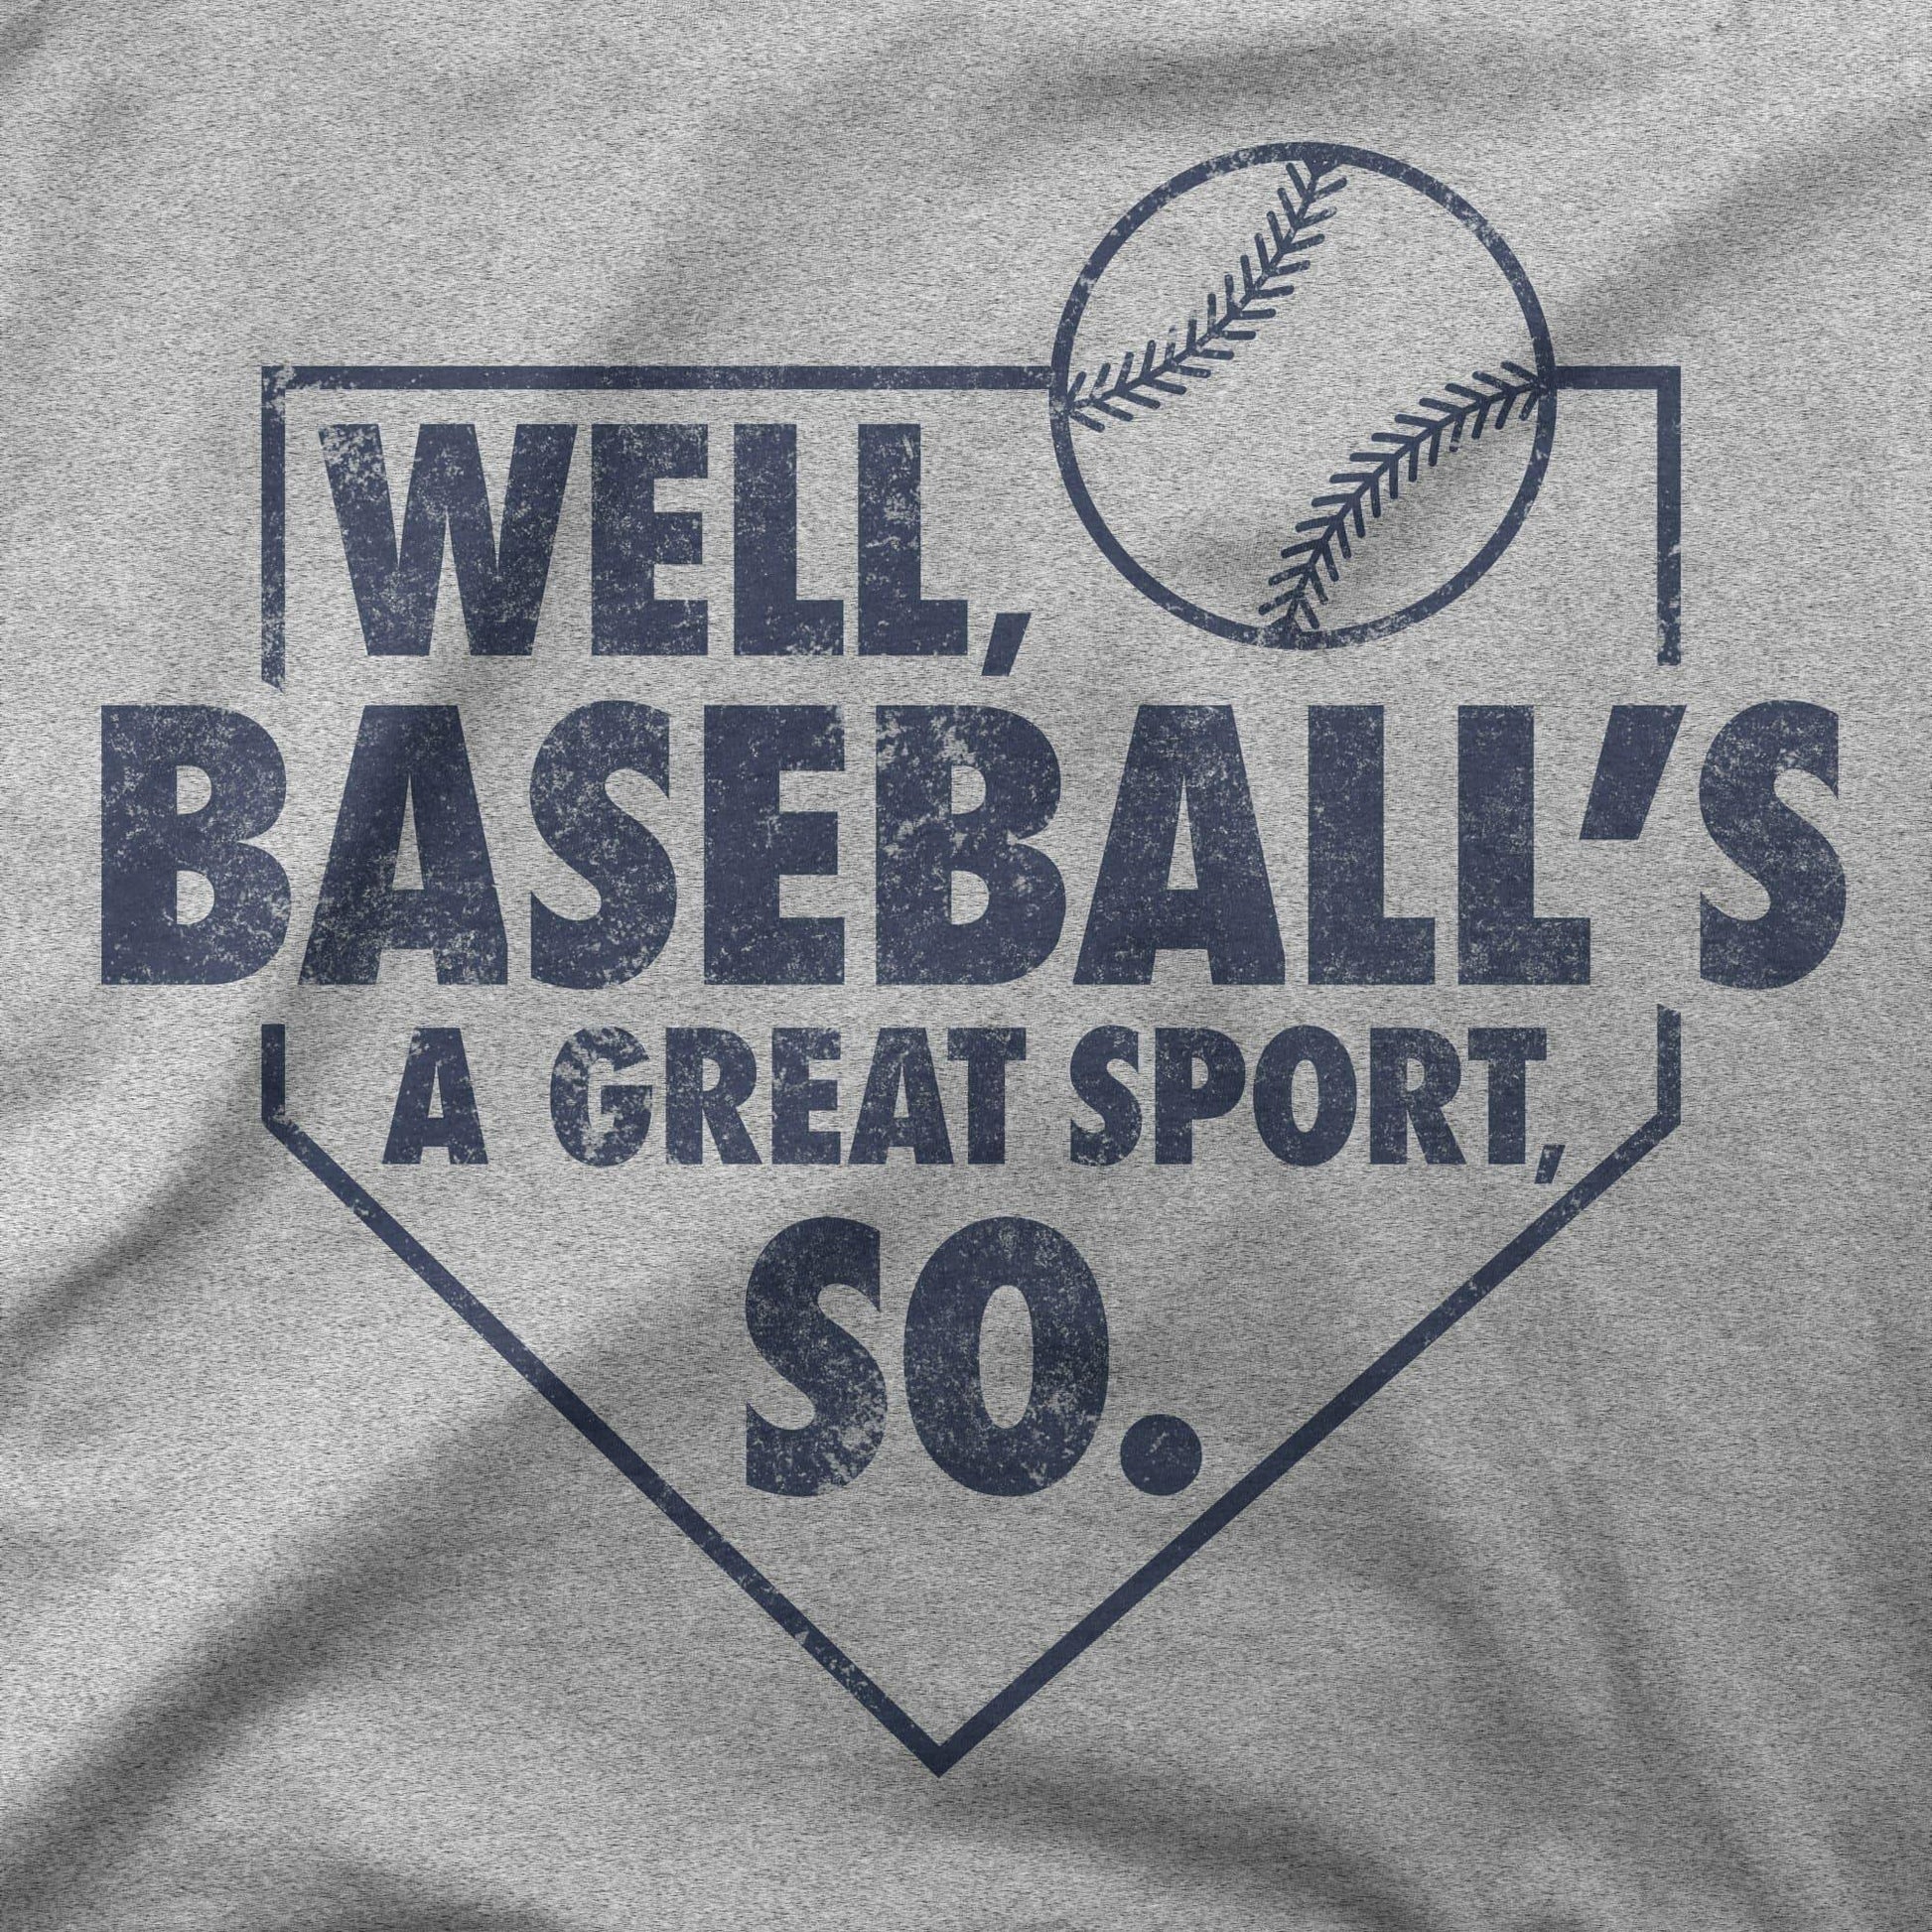 Well, Baseball's A Great Sport, So | T-Shirt - Jomboy Media